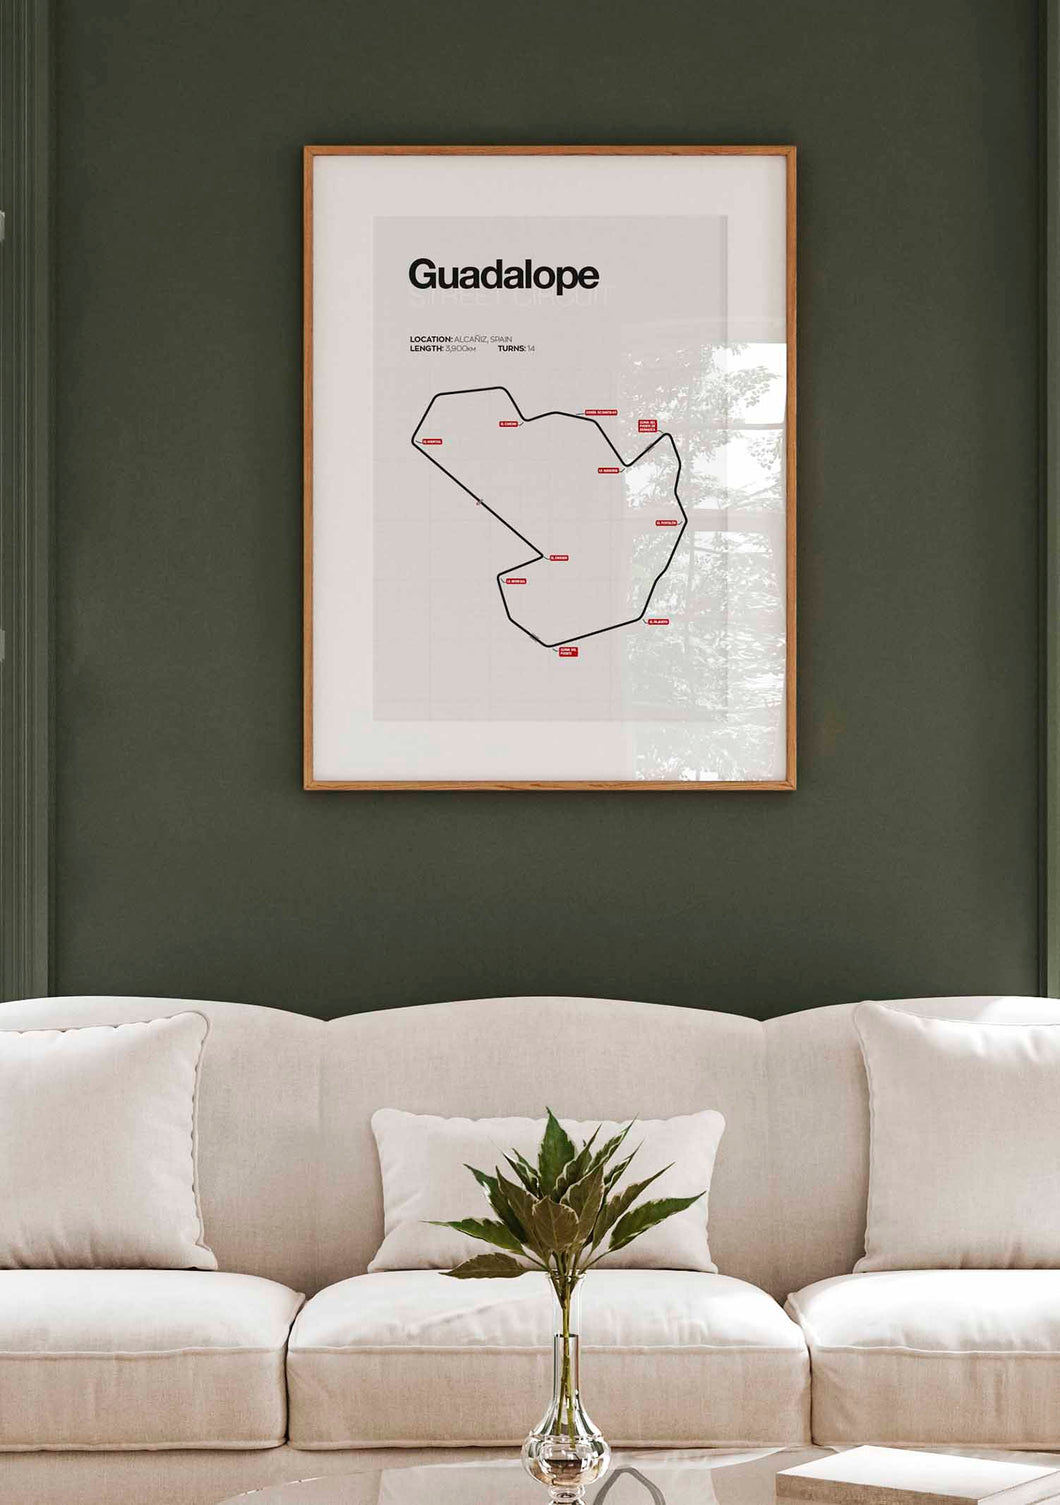 Guadalope